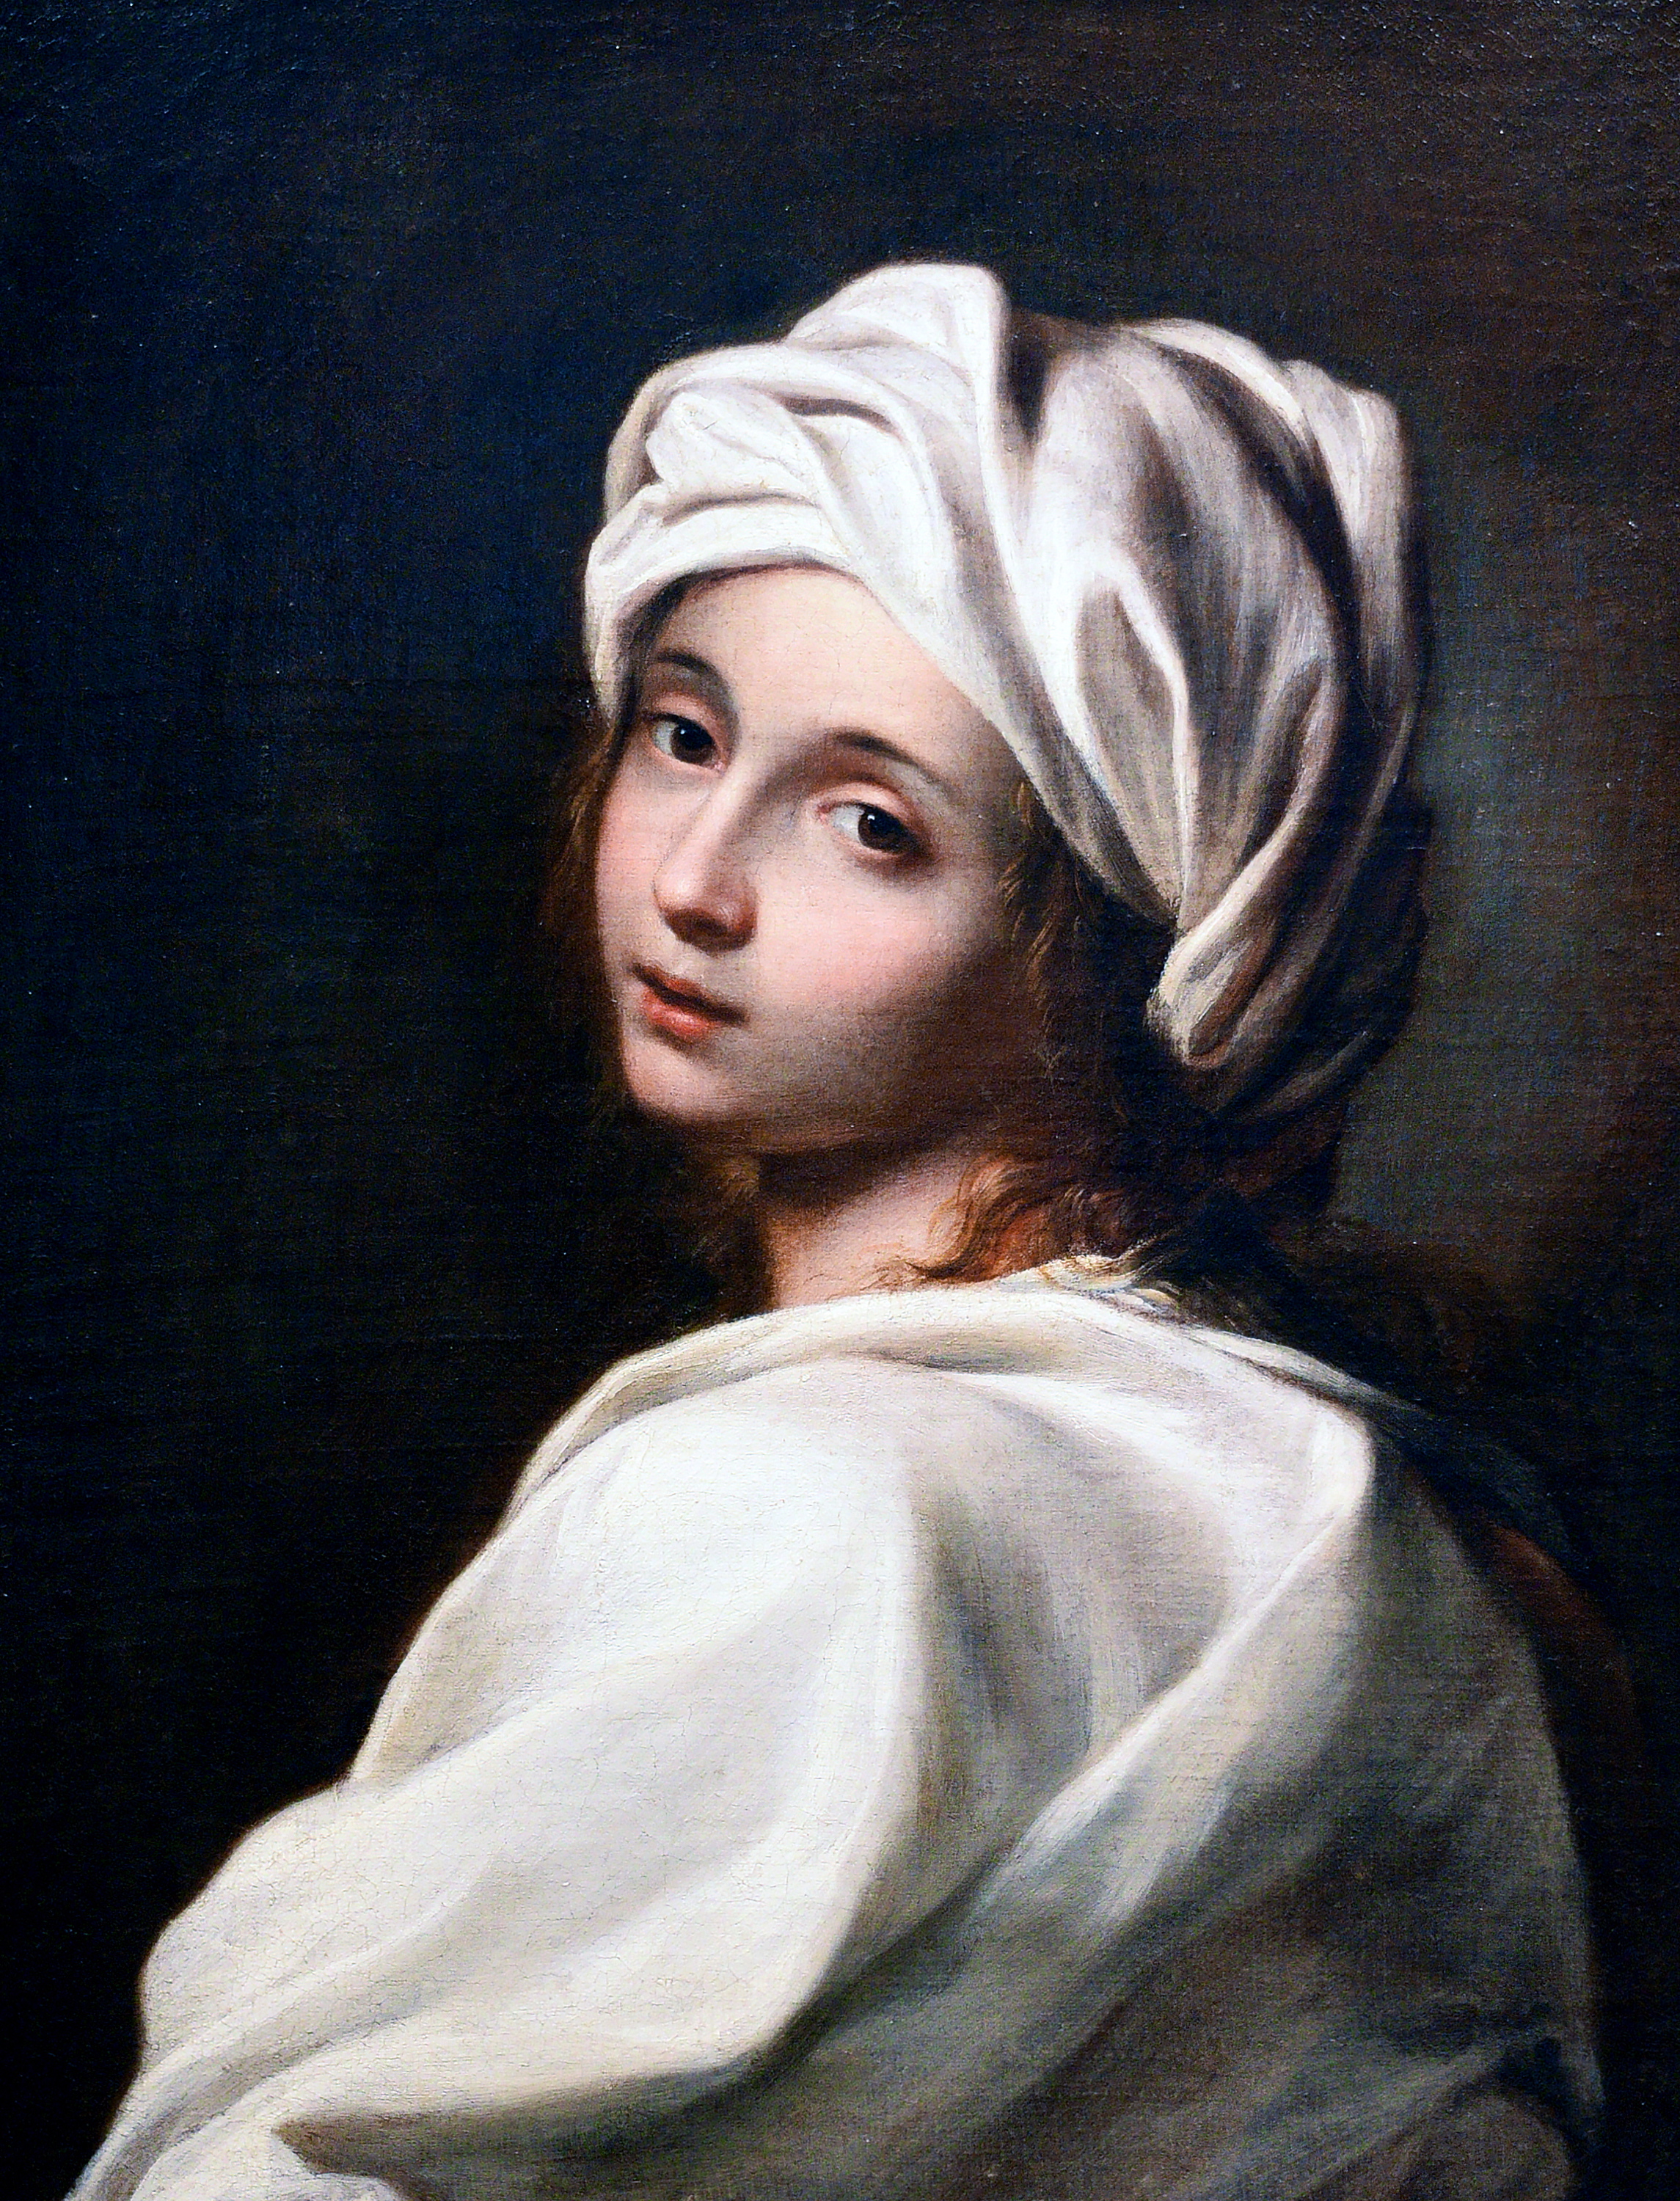 Portret Beatrice Cenci przypisywany Guidowi Reniemu, który Percy Shelley zobaczył około 1818 r. w pałacu Colonnów w Rzymie i który natchnął go do napisania słynnej sztuki „Cenci: Tragedia w trzech aktach”.